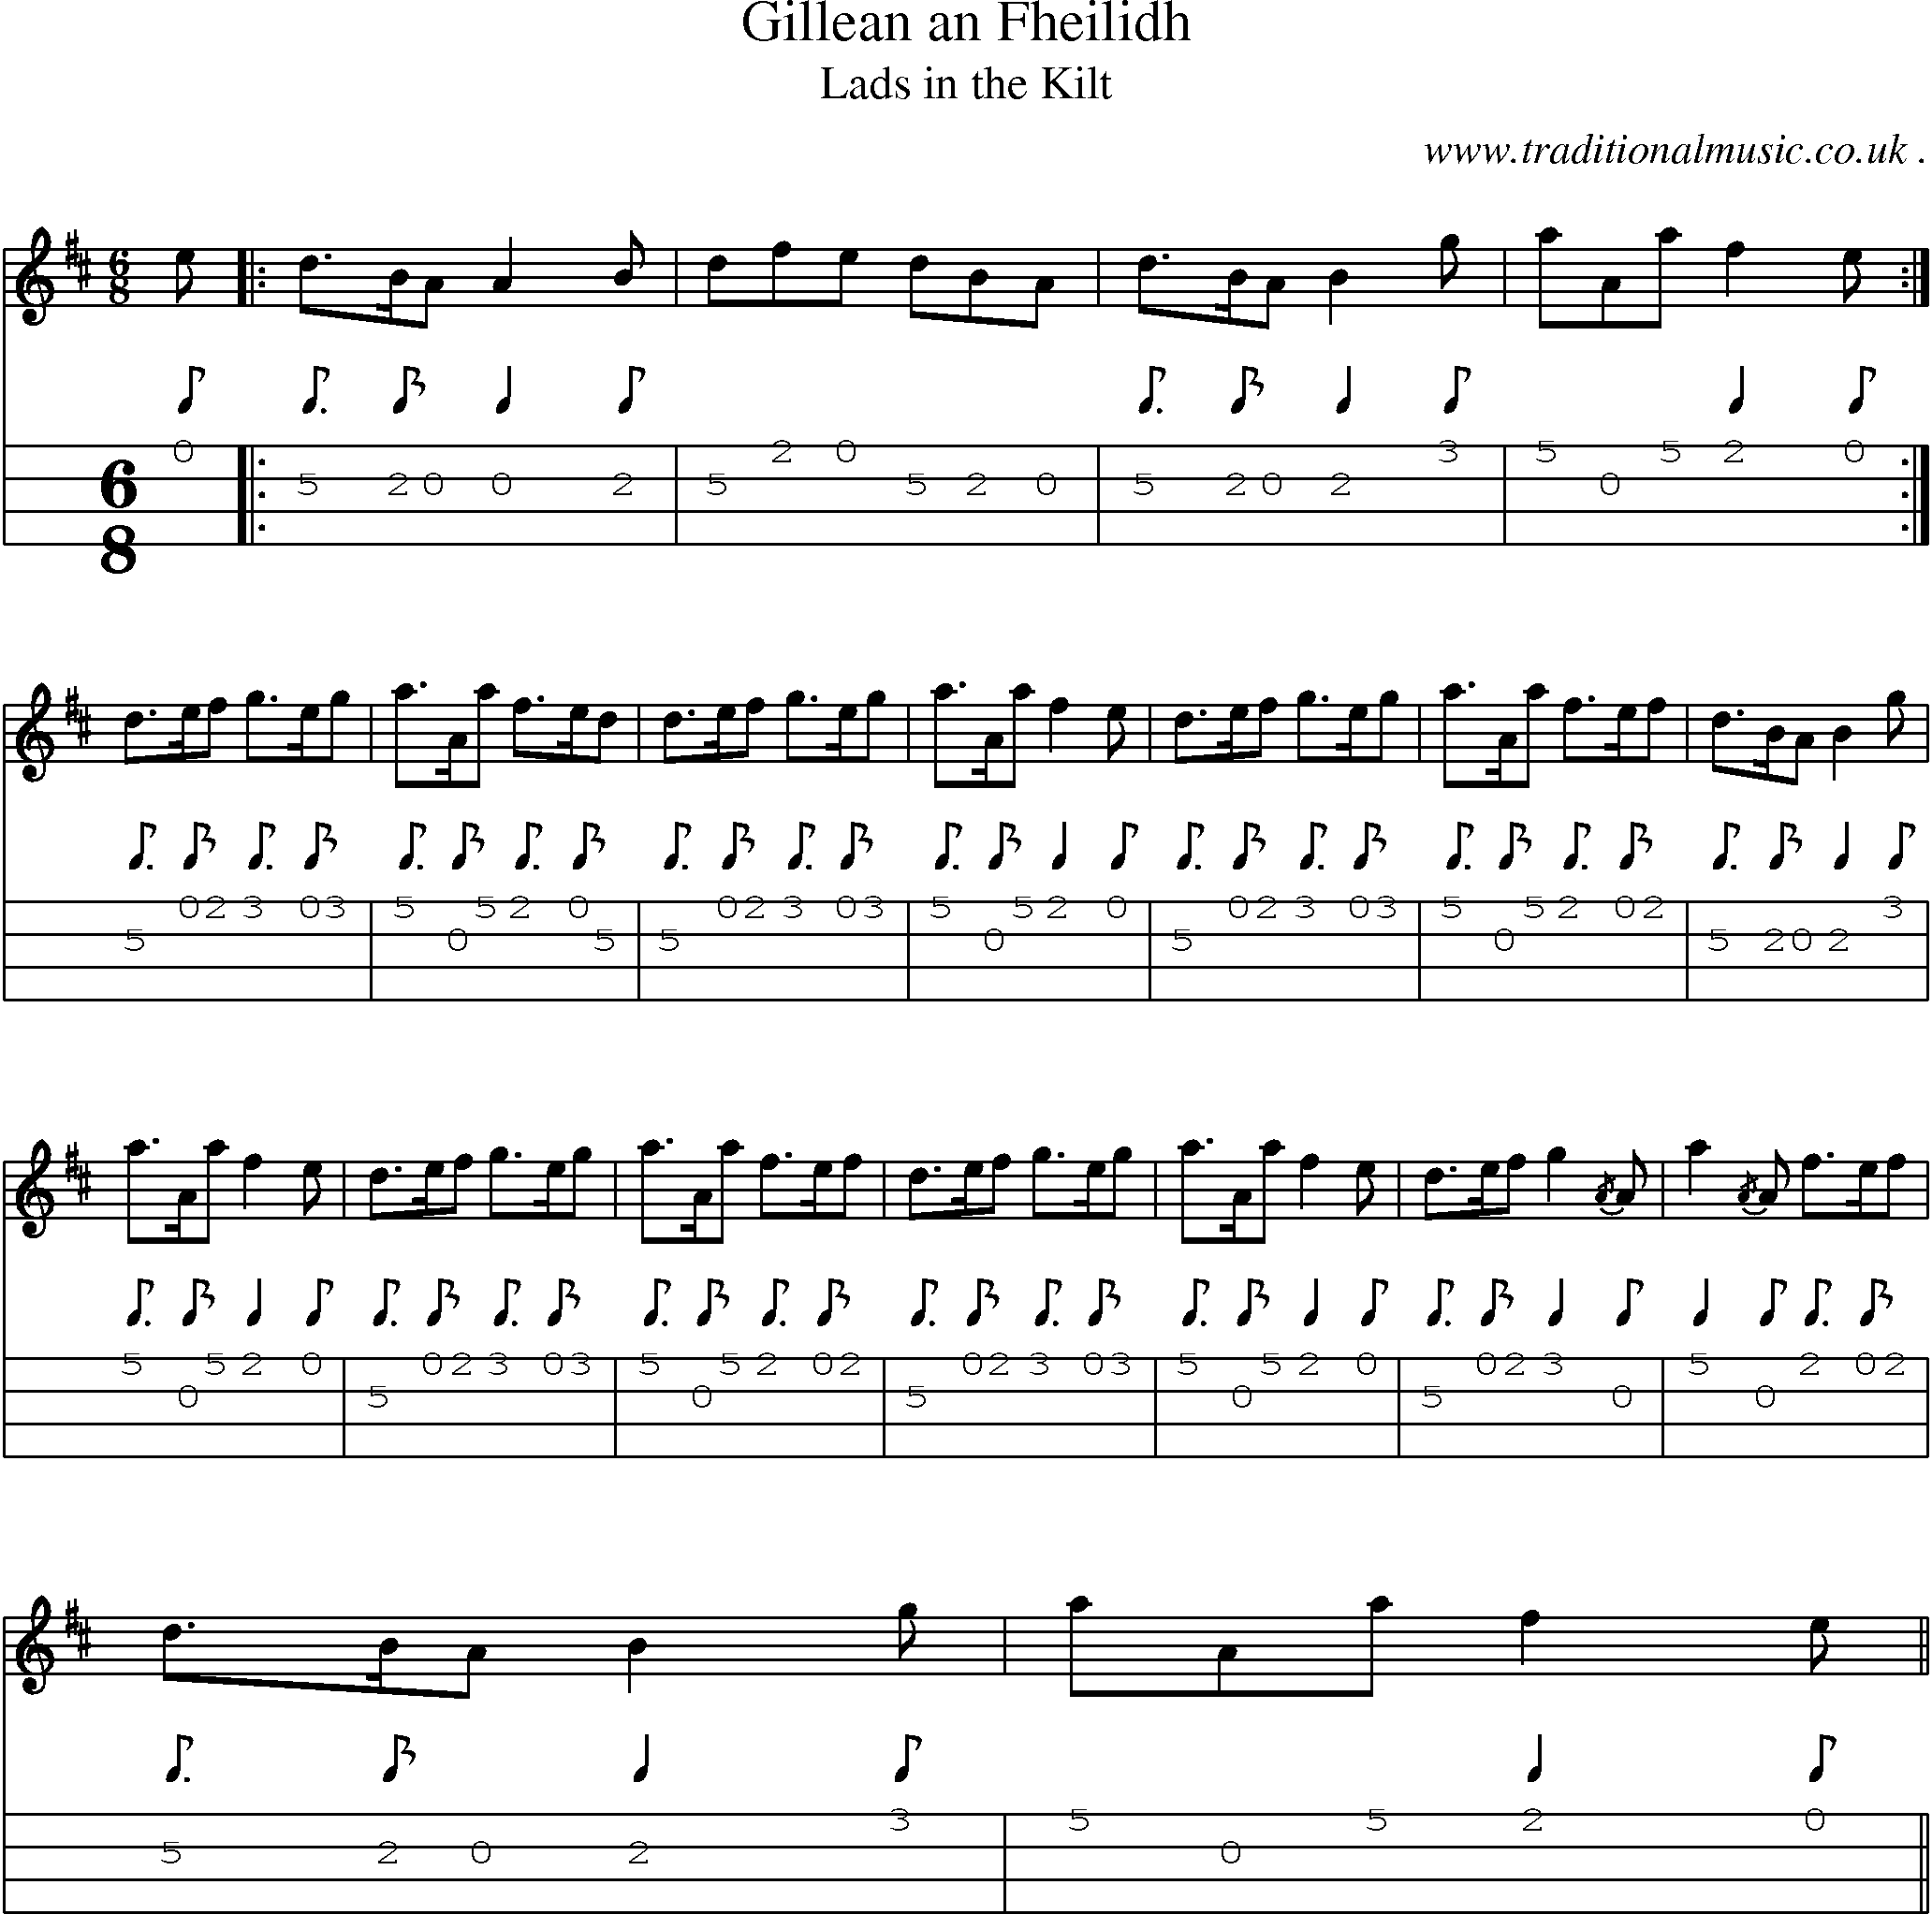 Sheet-music  score, Chords and Mandolin Tabs for Gillean An Fheilidh